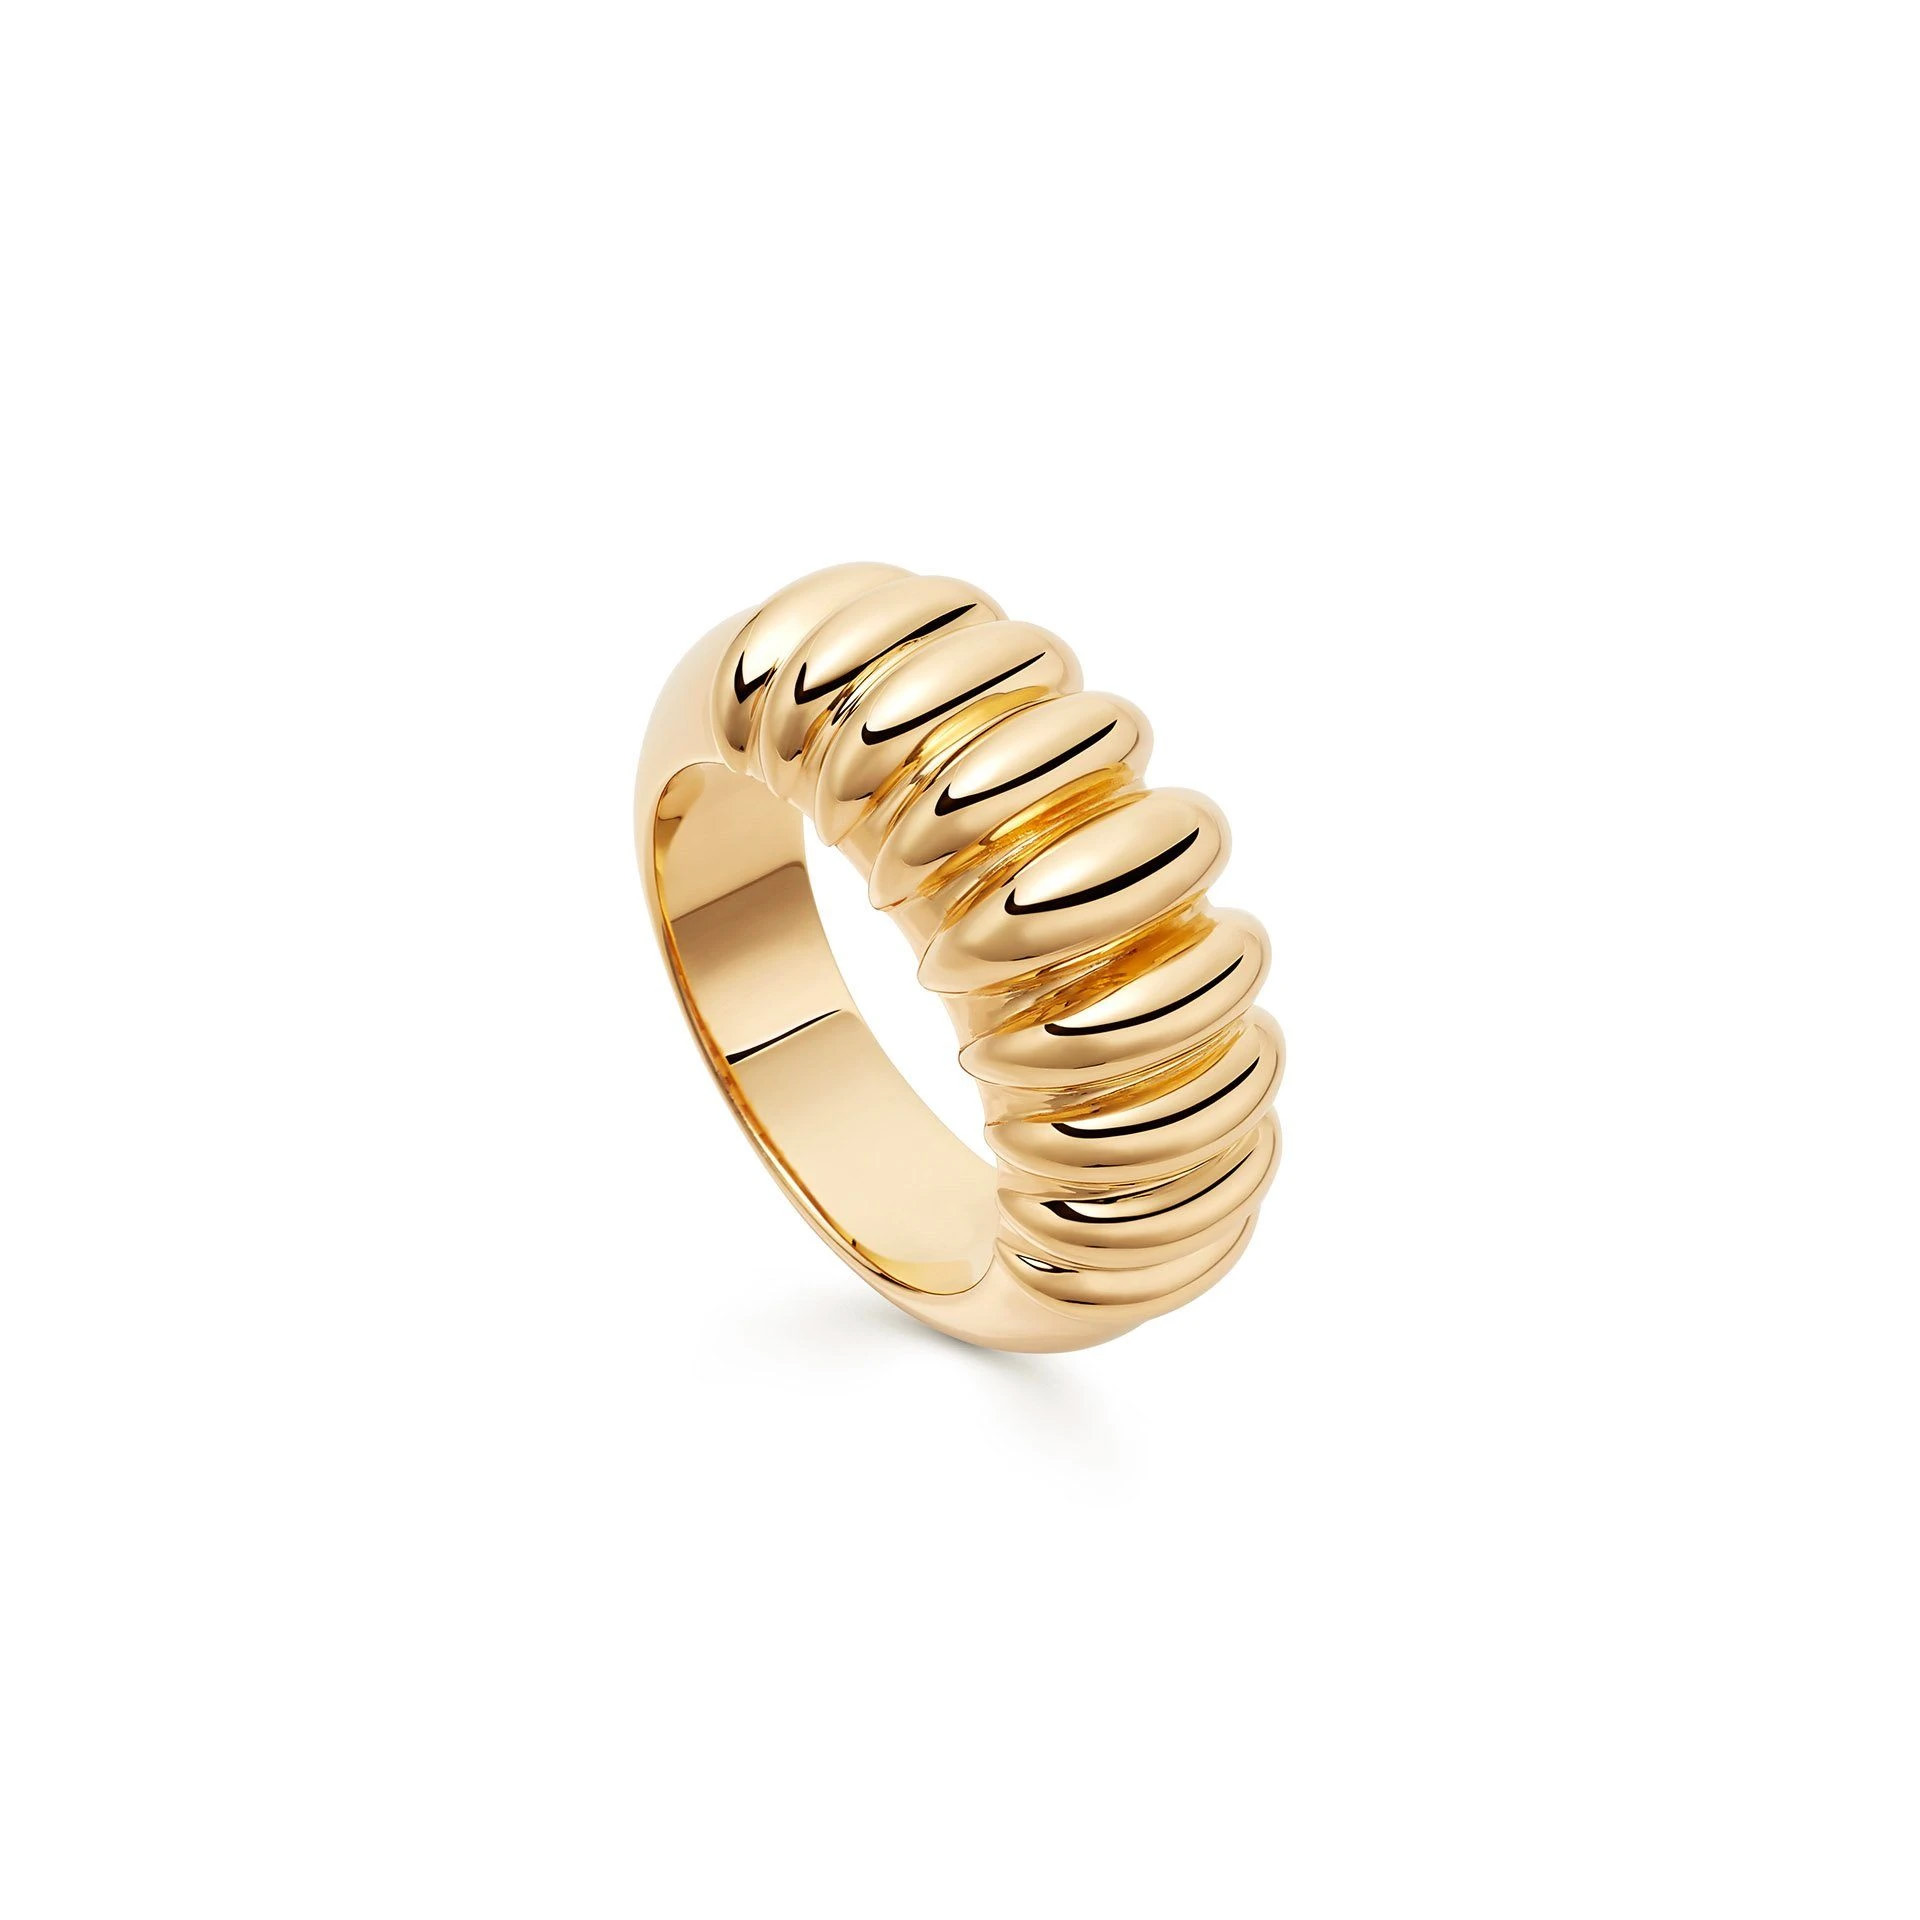 Hurtownie spersonalizowany pierścionek na zamówienie 18-karatowe złoto pozłacane na mosiądzu lub srebrze OEM fabryka biżuterii OEM/ODM biżuteria